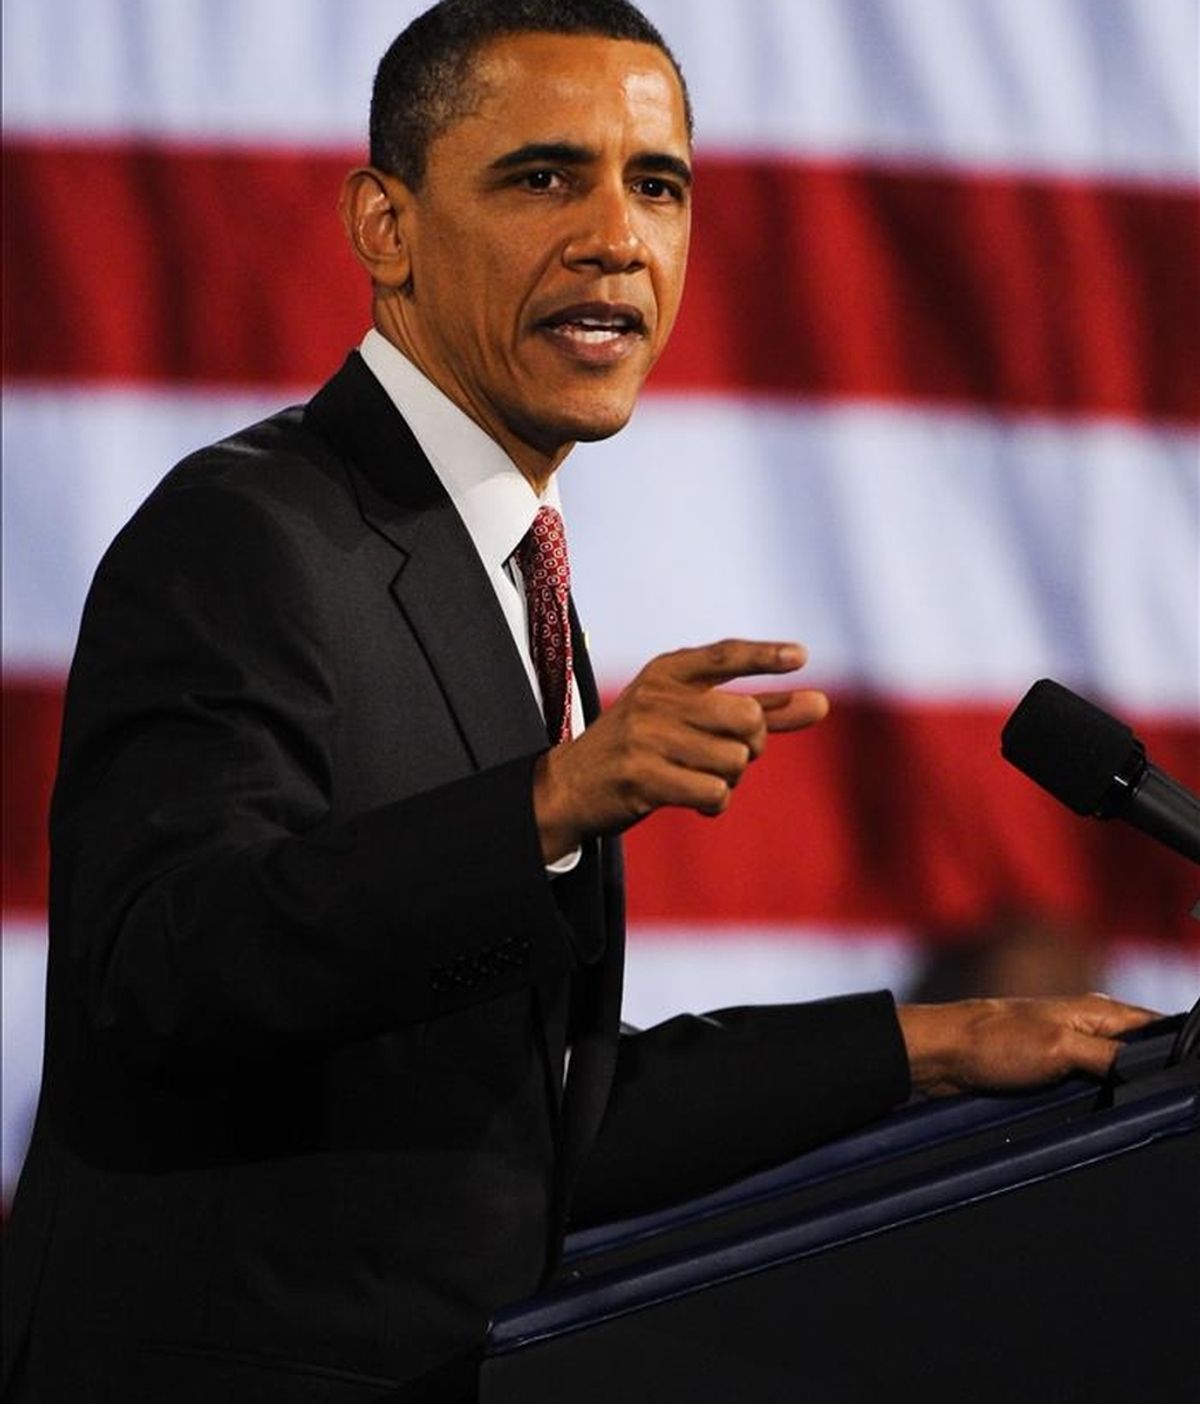 El presidente de Estados Unidos Barack Obama pronuncia un discurso en un evento de recolección de fondos para la Convención Democrática Nacional y su campaña de re-elección 2012, ayer 14 de abril, en el Navy Pier en Chicago, Illinois (EE.UU.). EFE